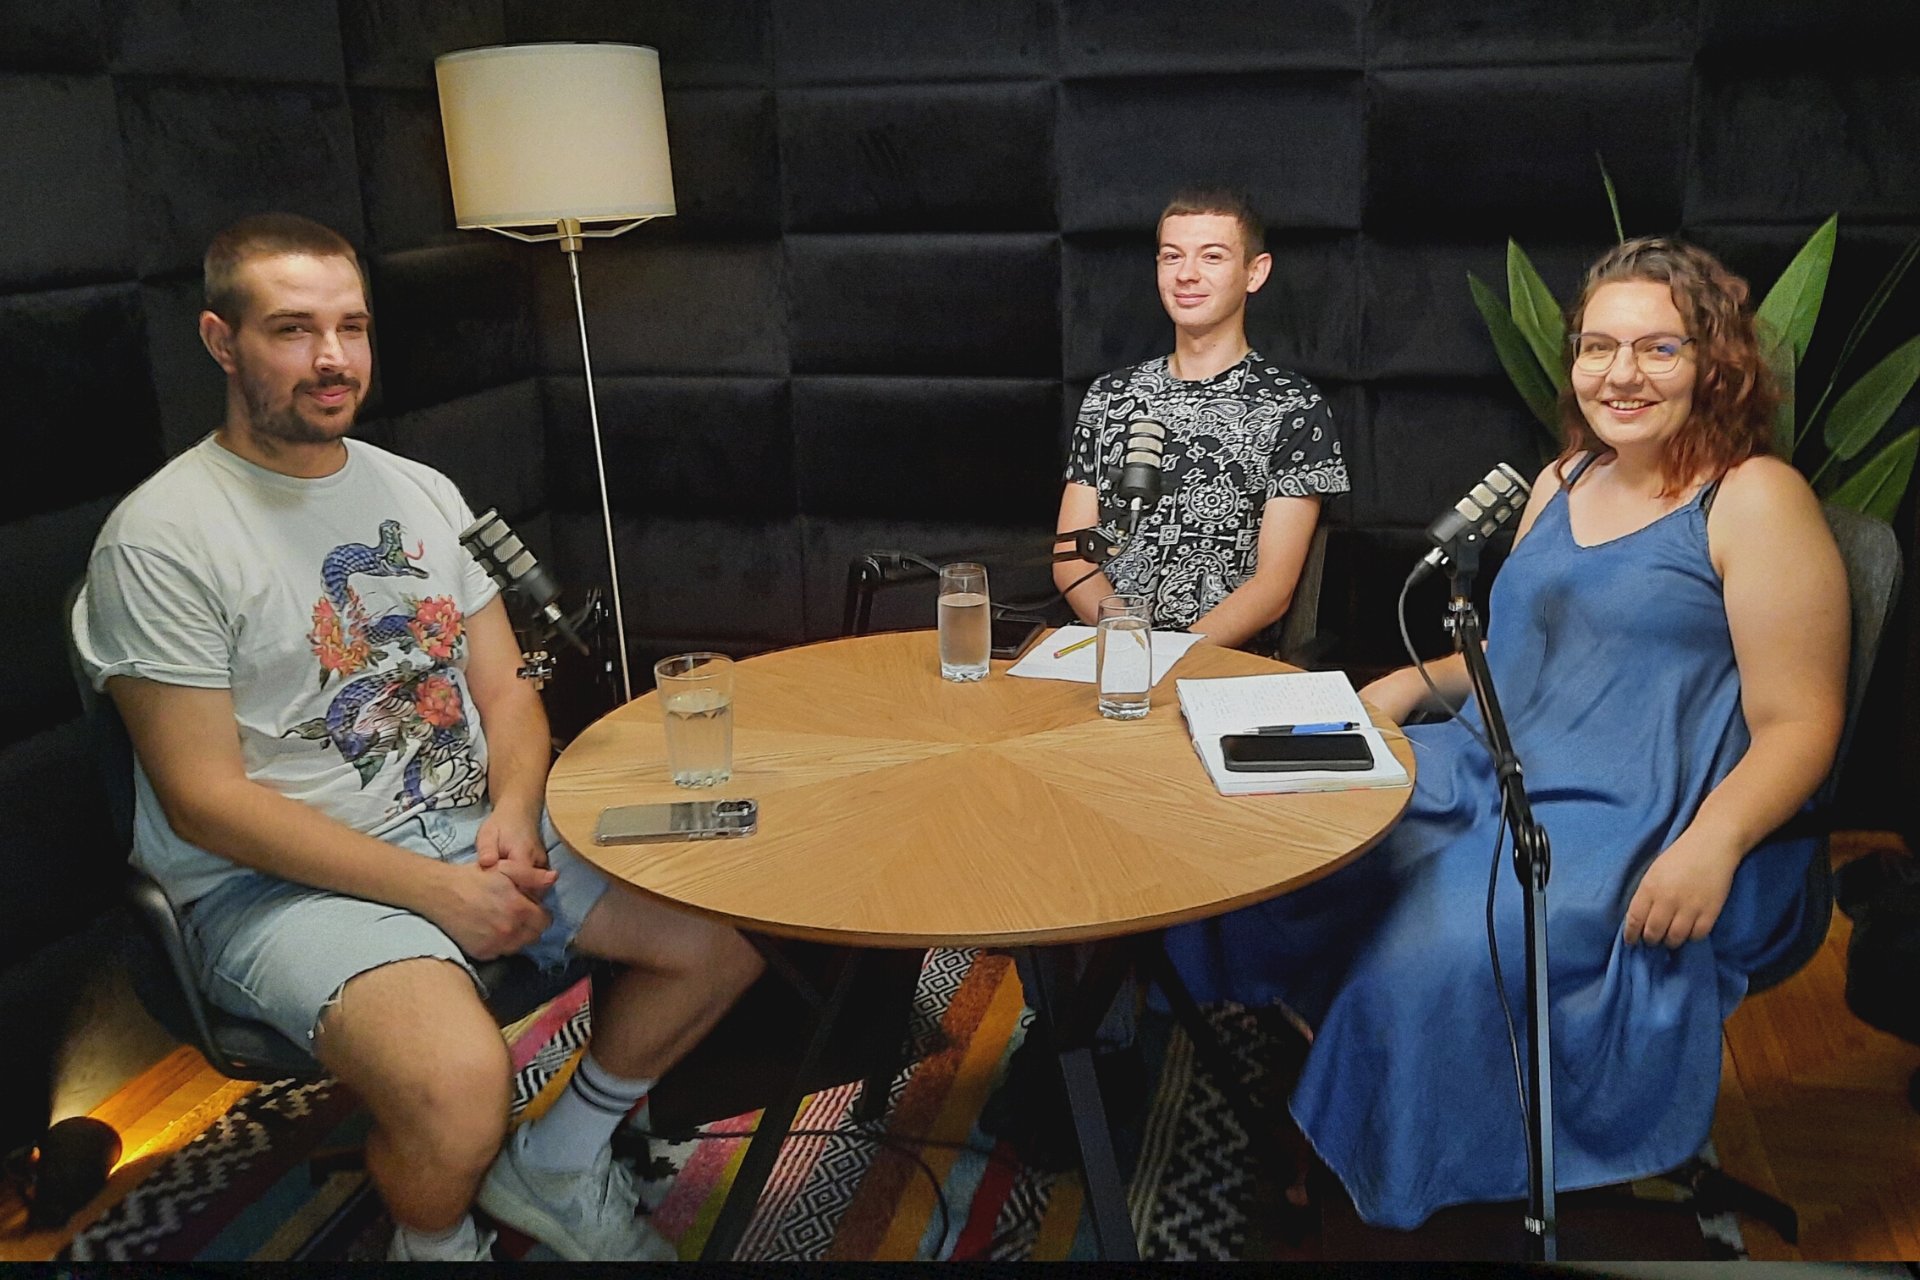 podcast studentski poslovi - Duje, Ramona i Hrvoje u studiju sa smeđim stolom, crnom pozadinom i lampom